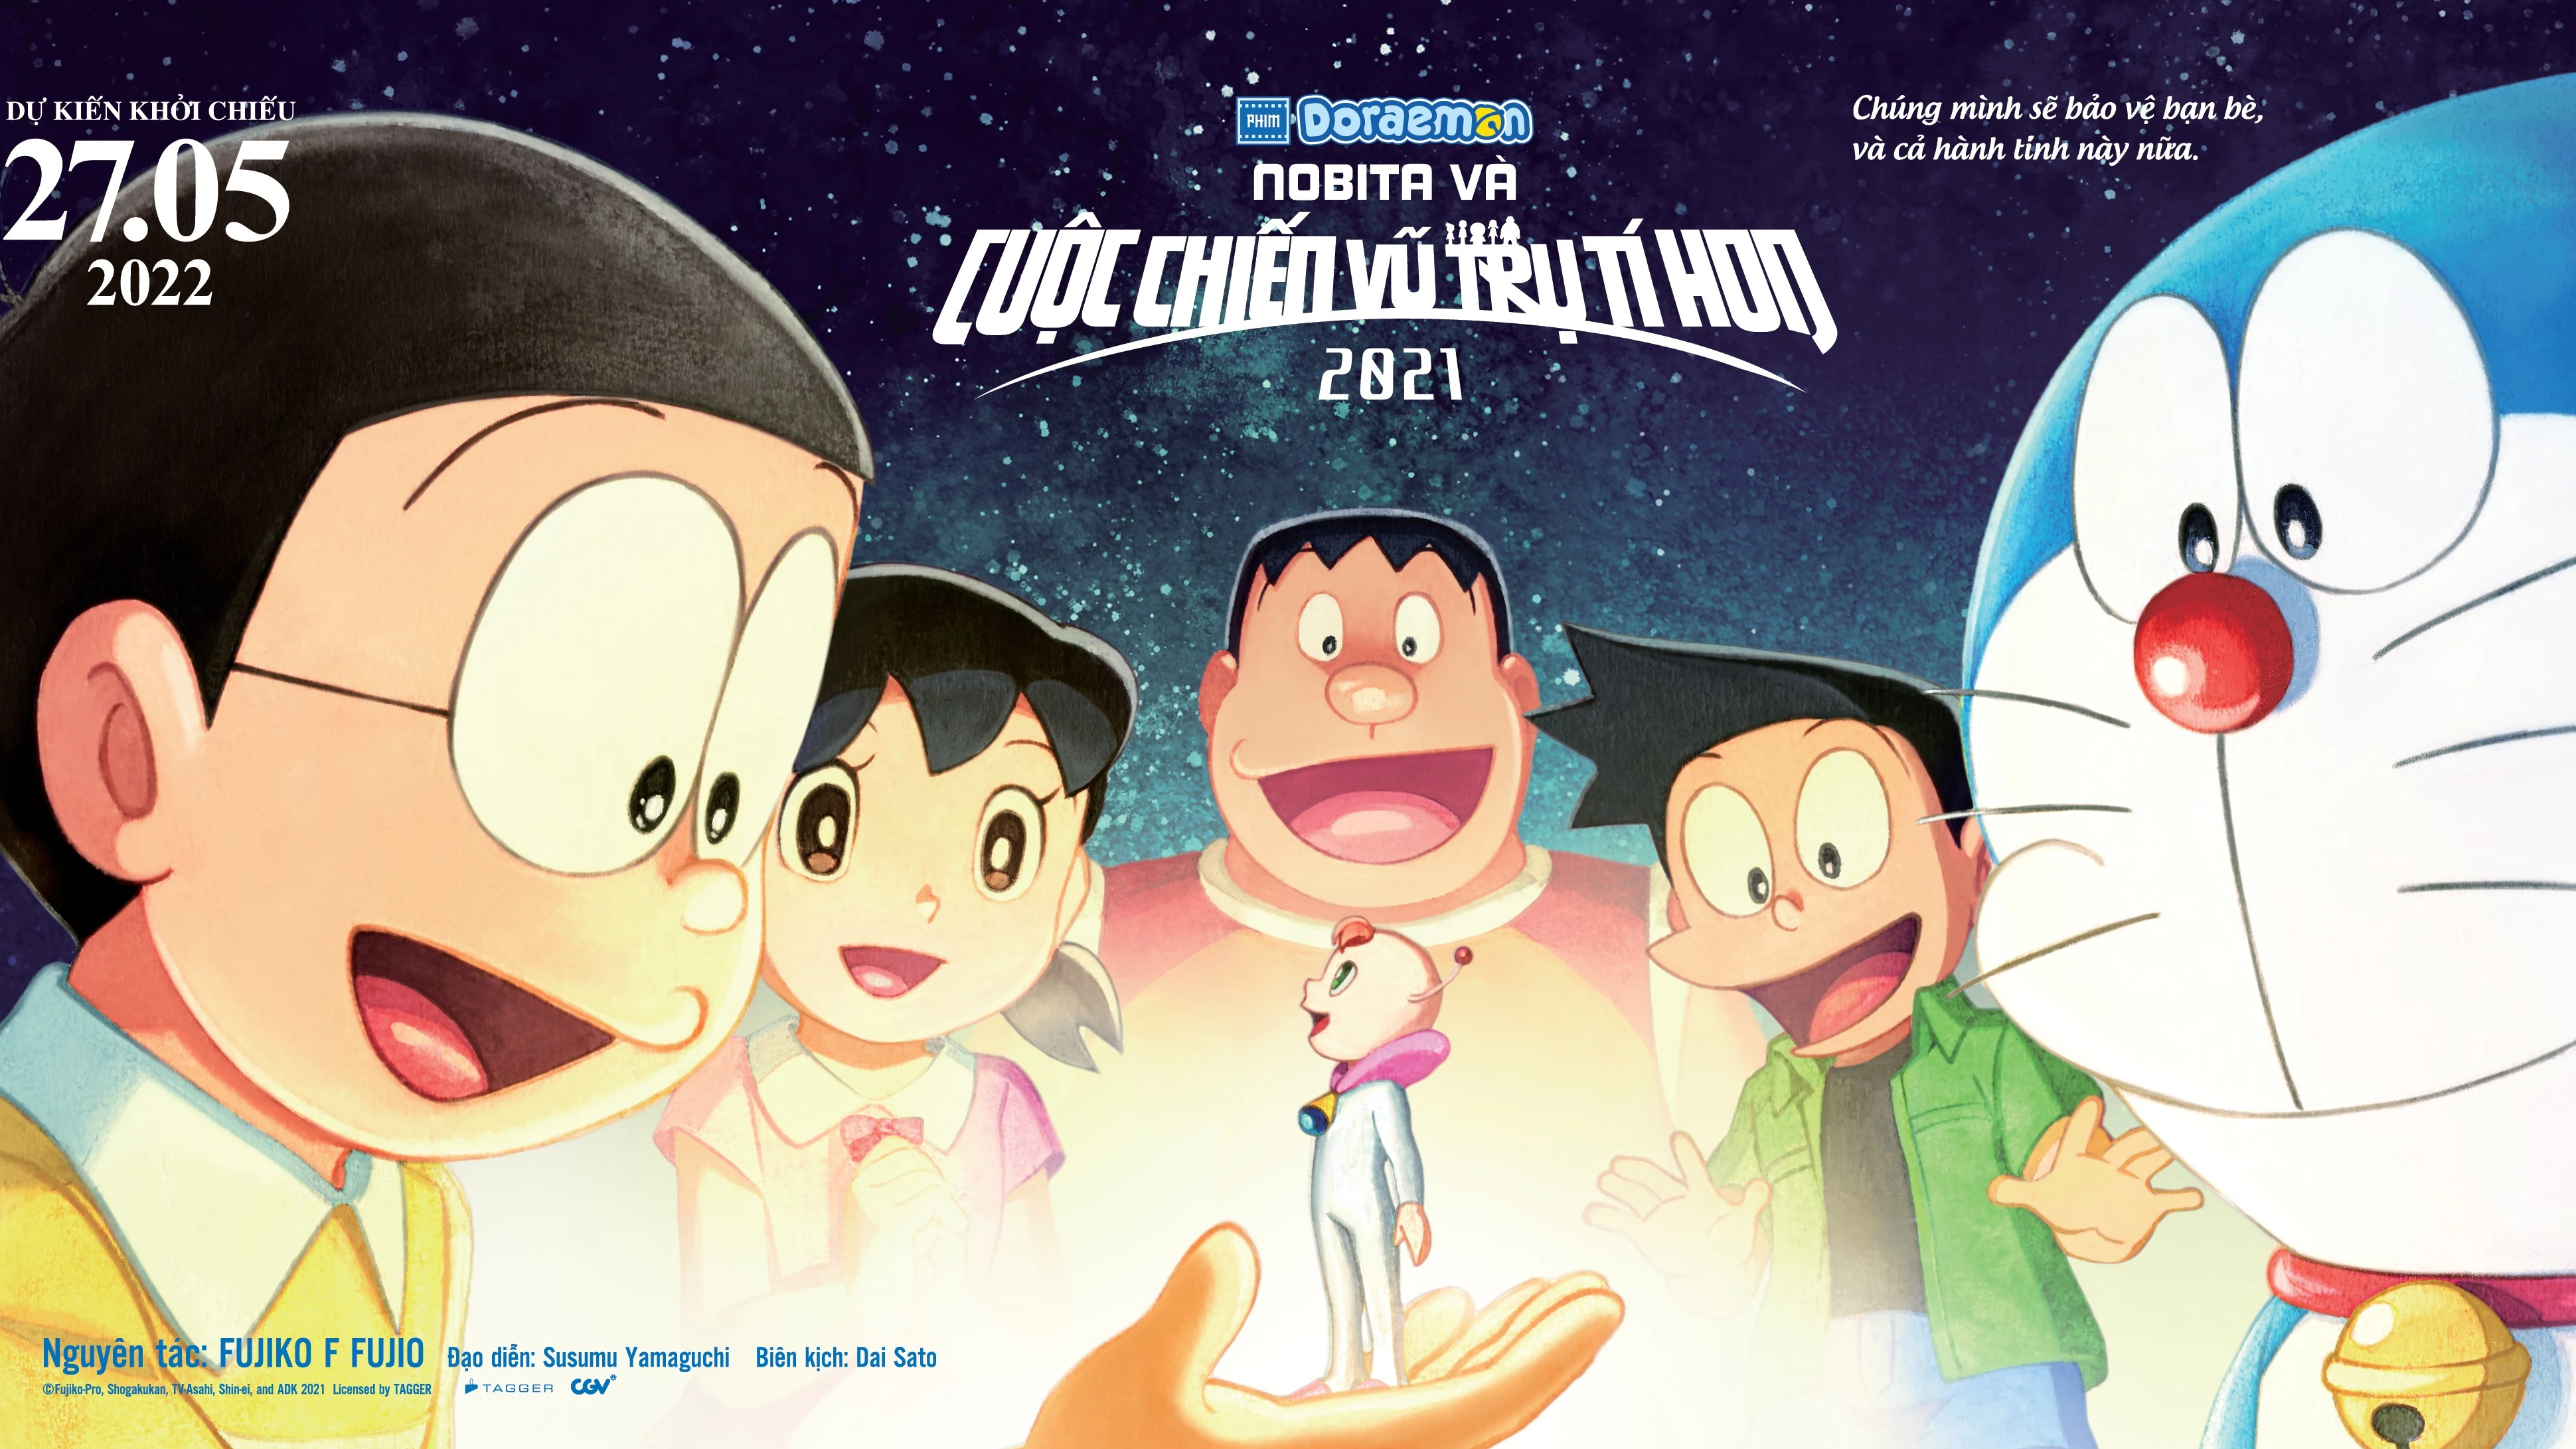 Phim Điện Ảnh Doraemon: Nobita Và Cuộc Chiến Vũ Trụ Tí Hon 2021 mở màn ấn tượng với vị trí số 1 doanh thu phòng vé Việt cuối tuần qua.